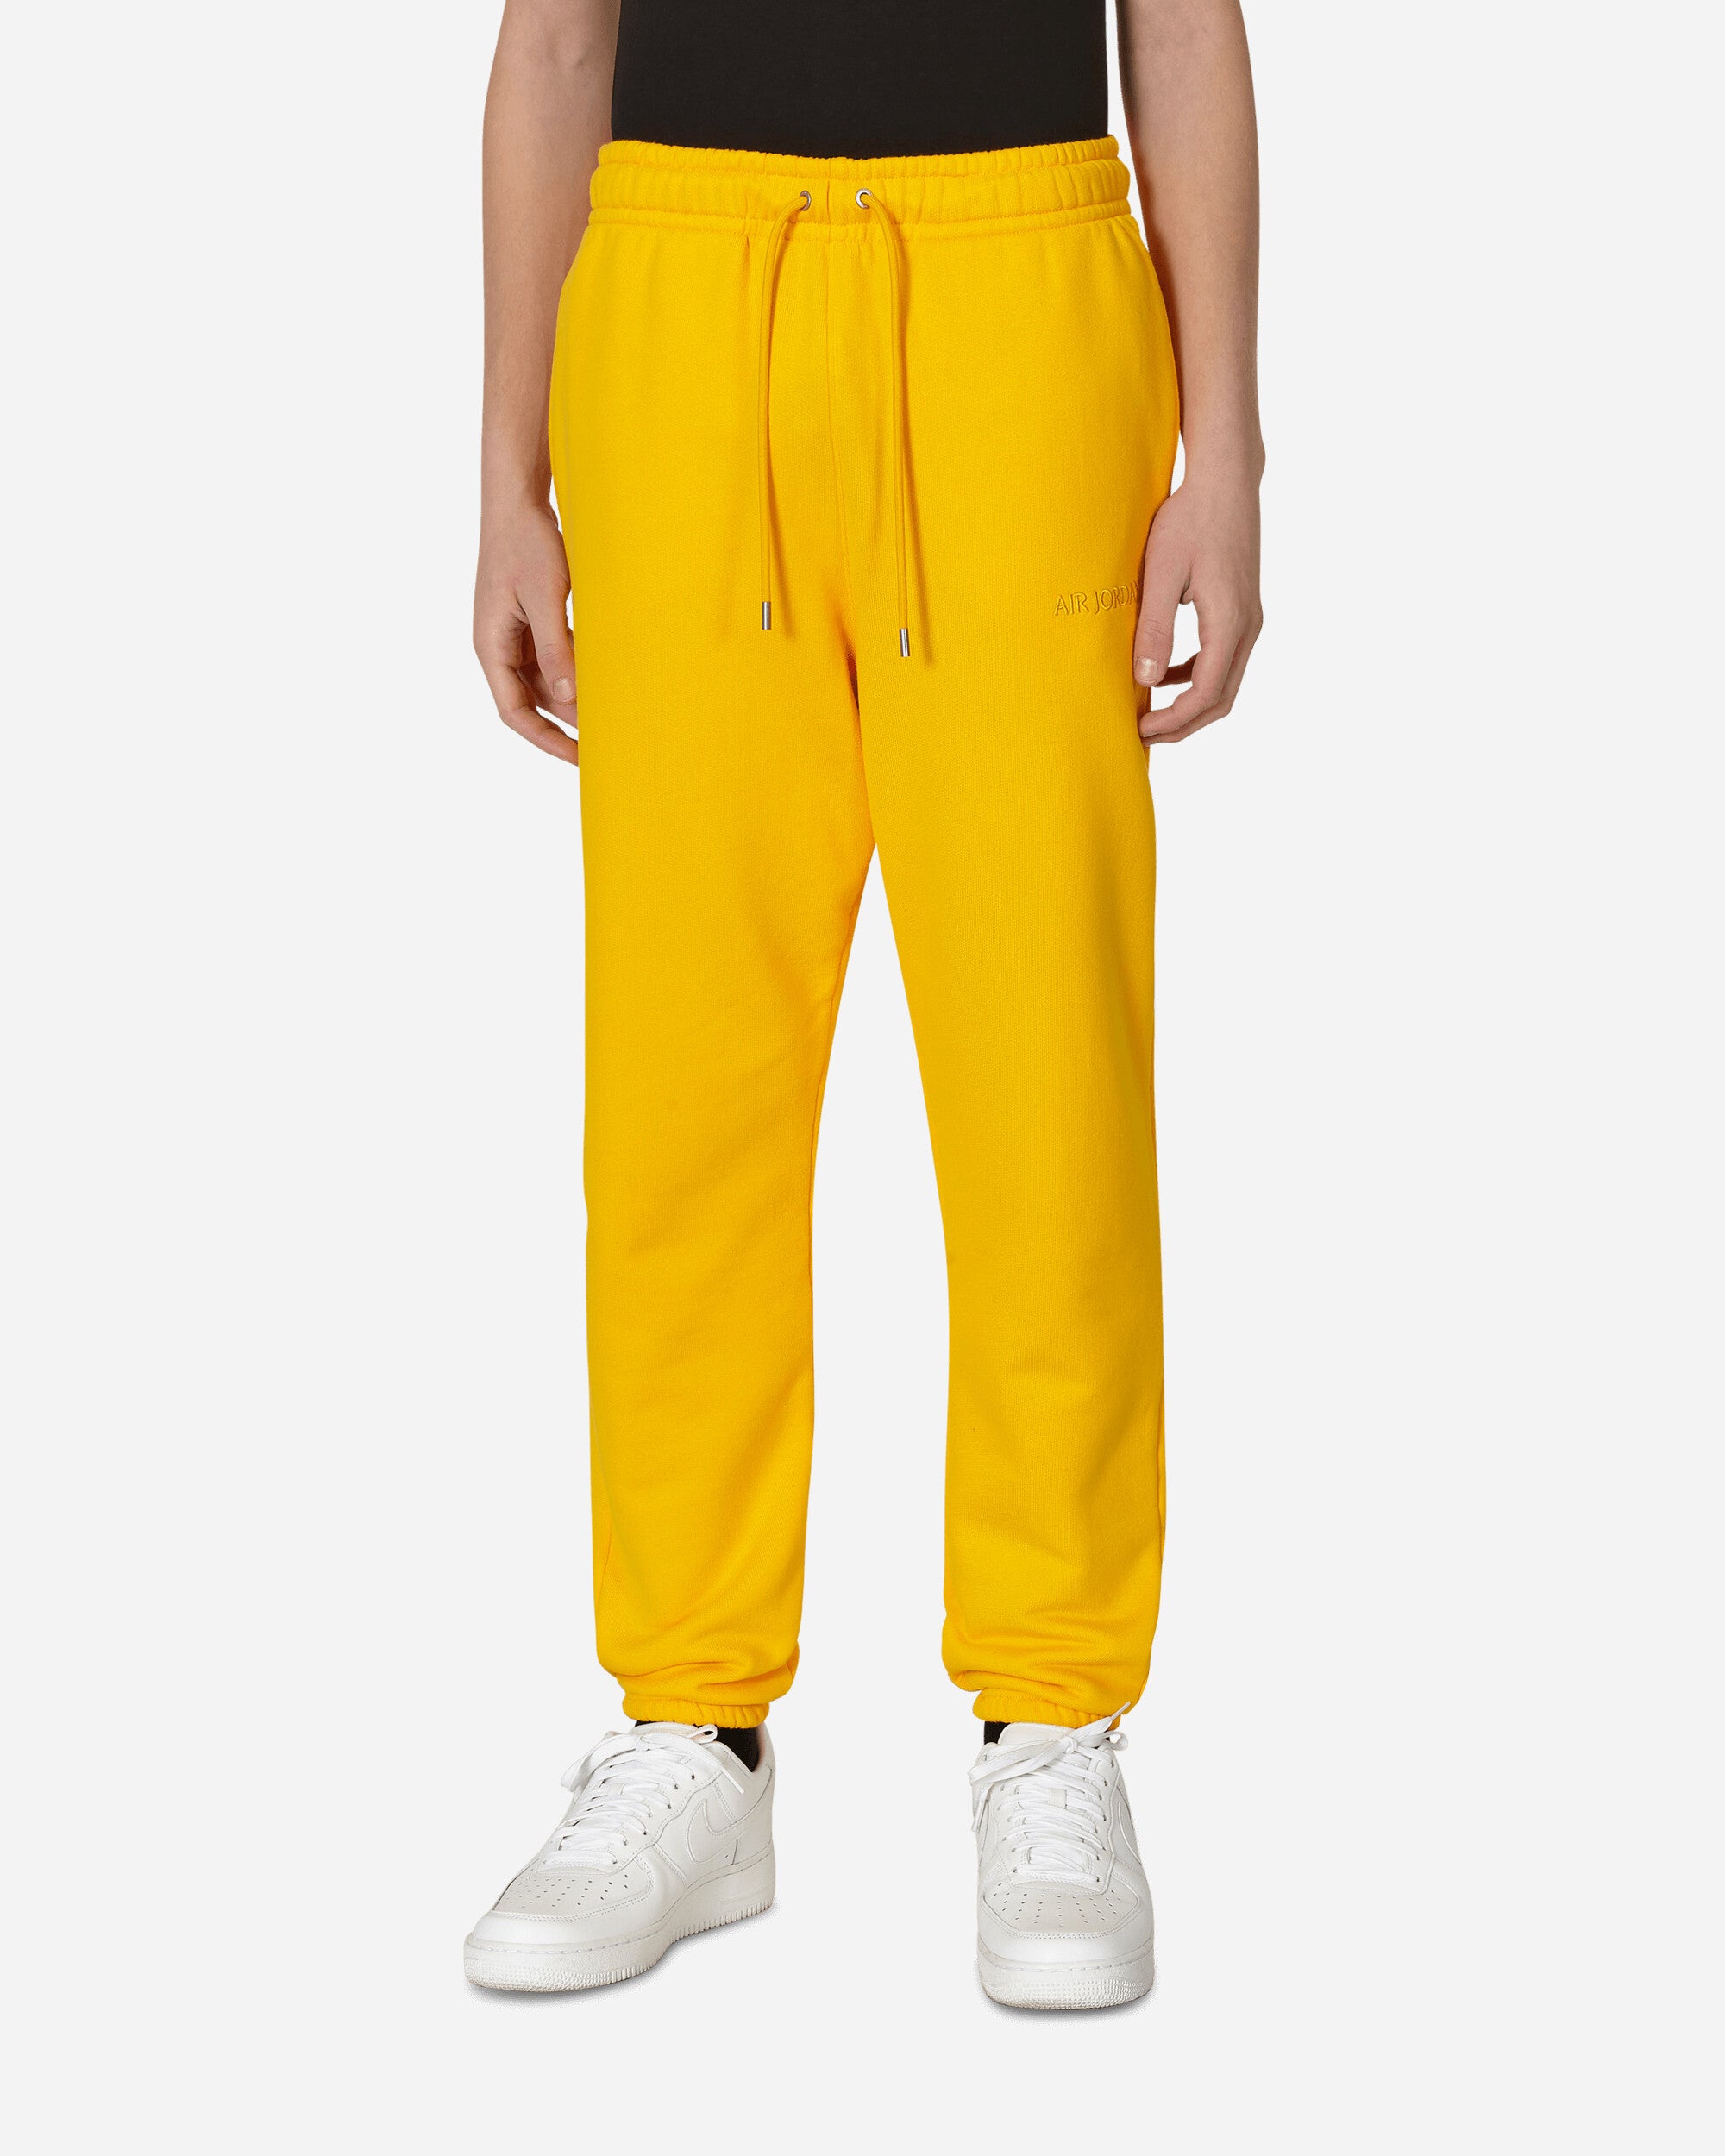 Wordmark Fleece Pants Yellow